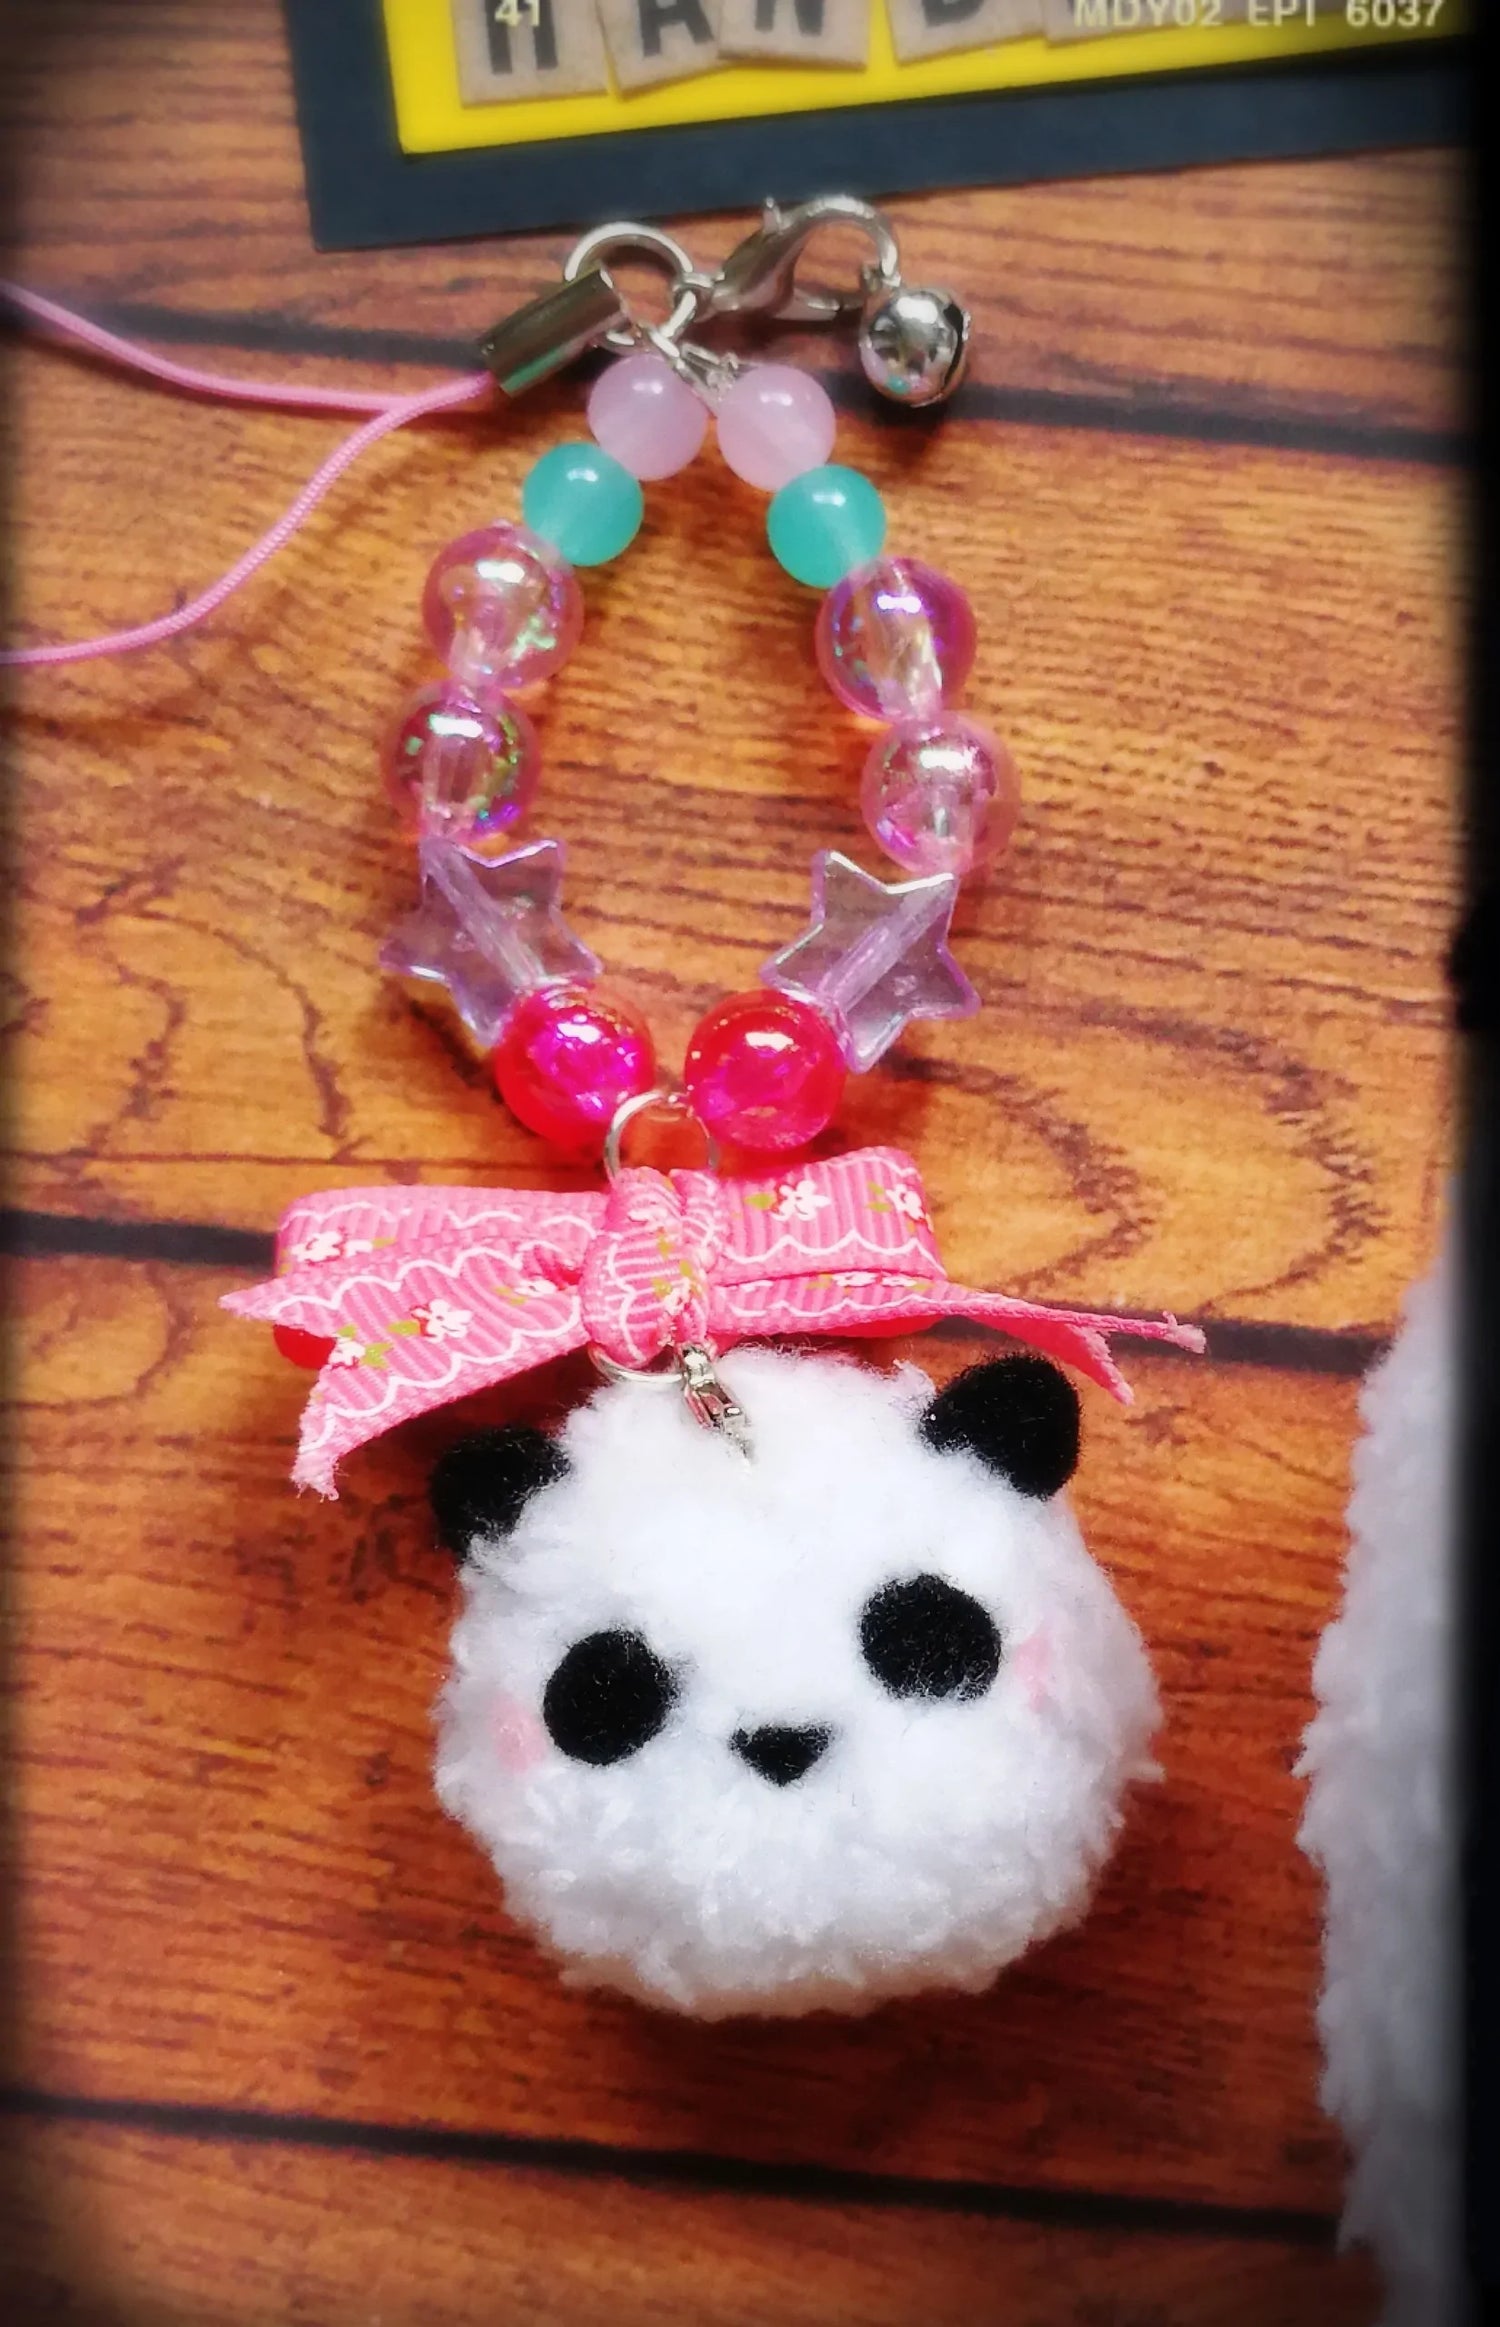 Cute Panda Keychain Fuzzy N Chic